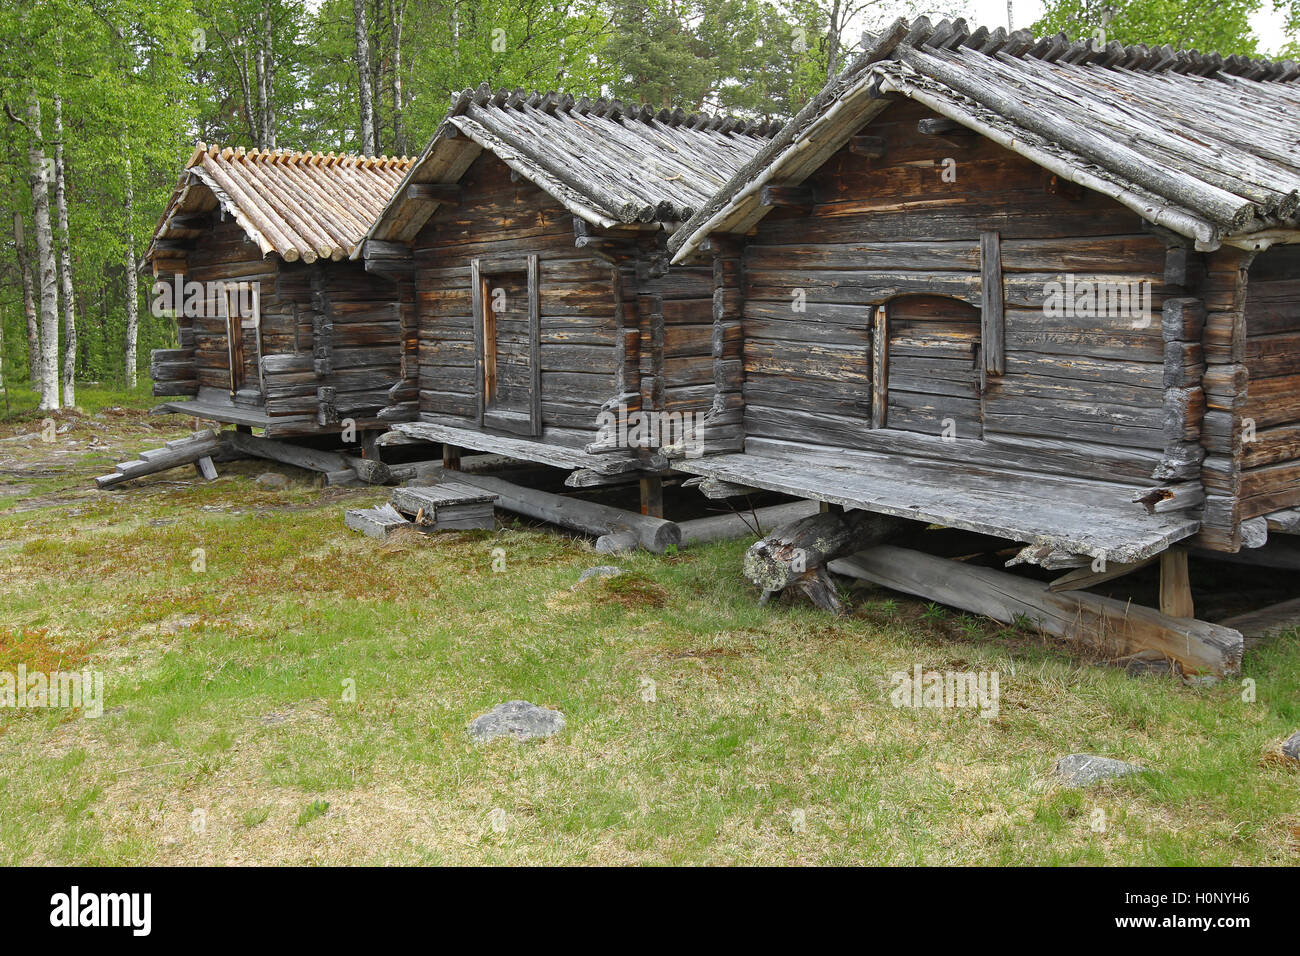 Log houses, 17th century, Arvidsjaur, Sweden Stock Photo